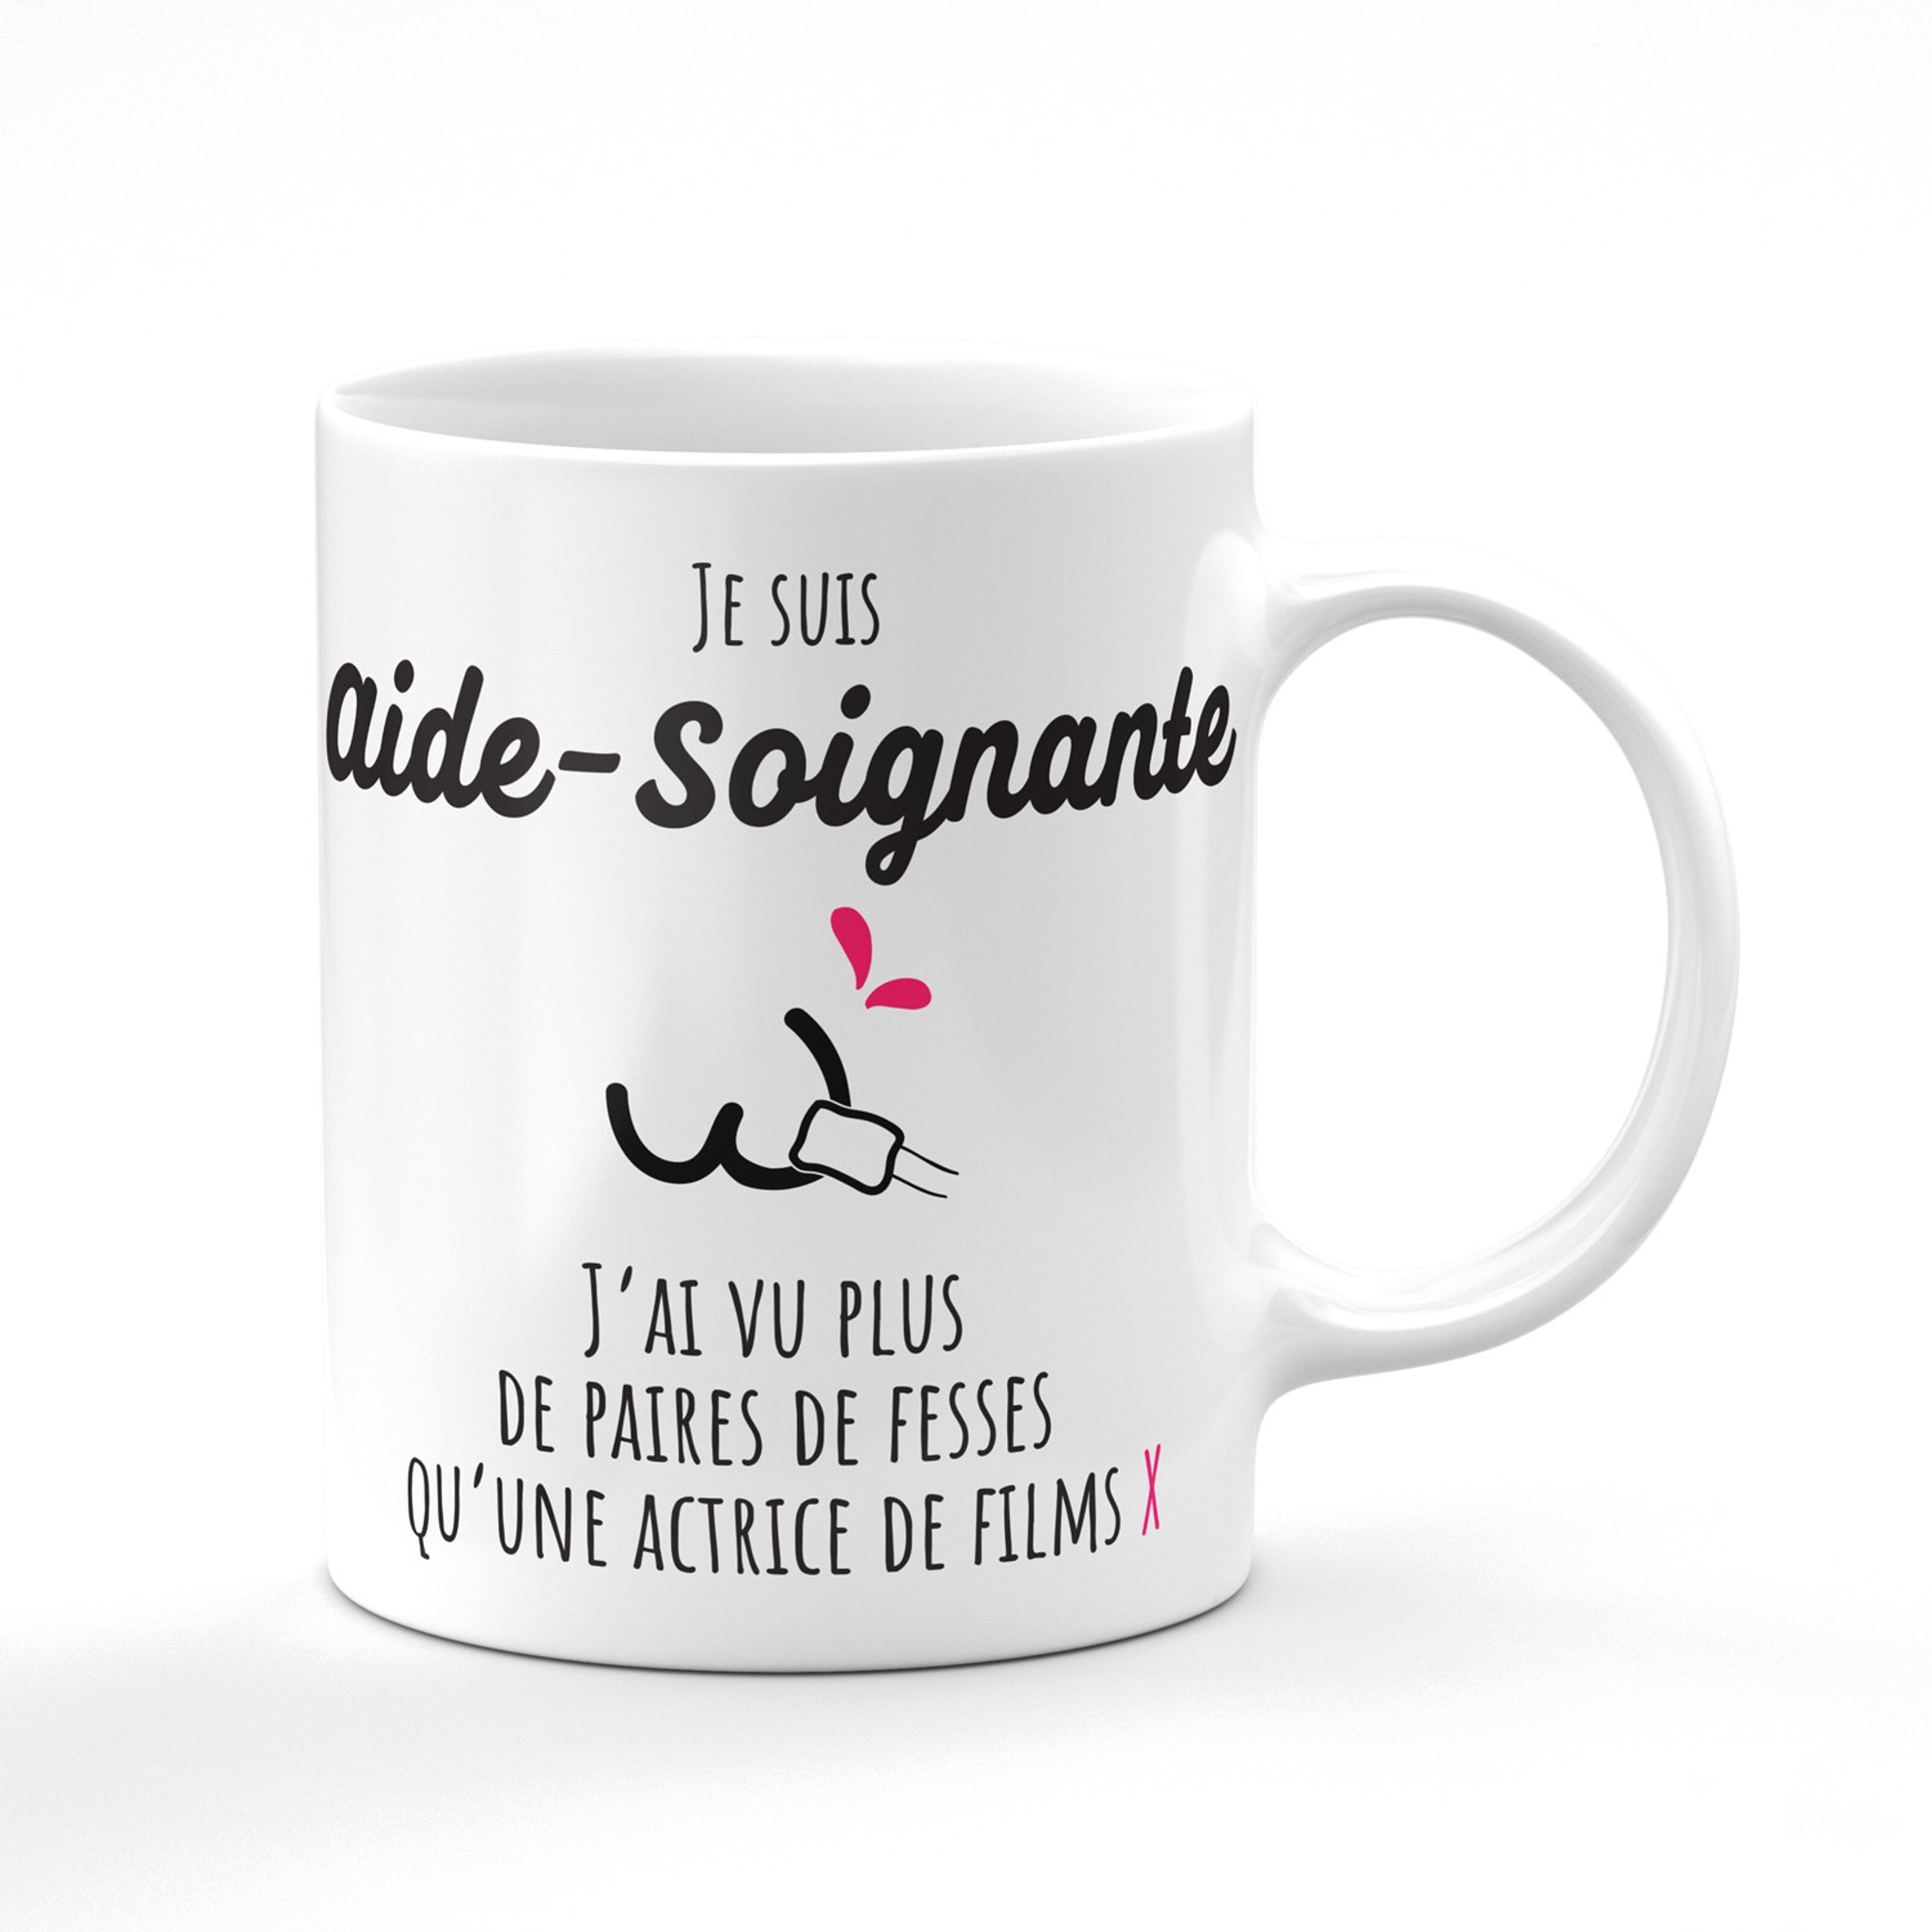 Mug - Aide Soignante d'amour - 6 Coloris - Cadeau Original